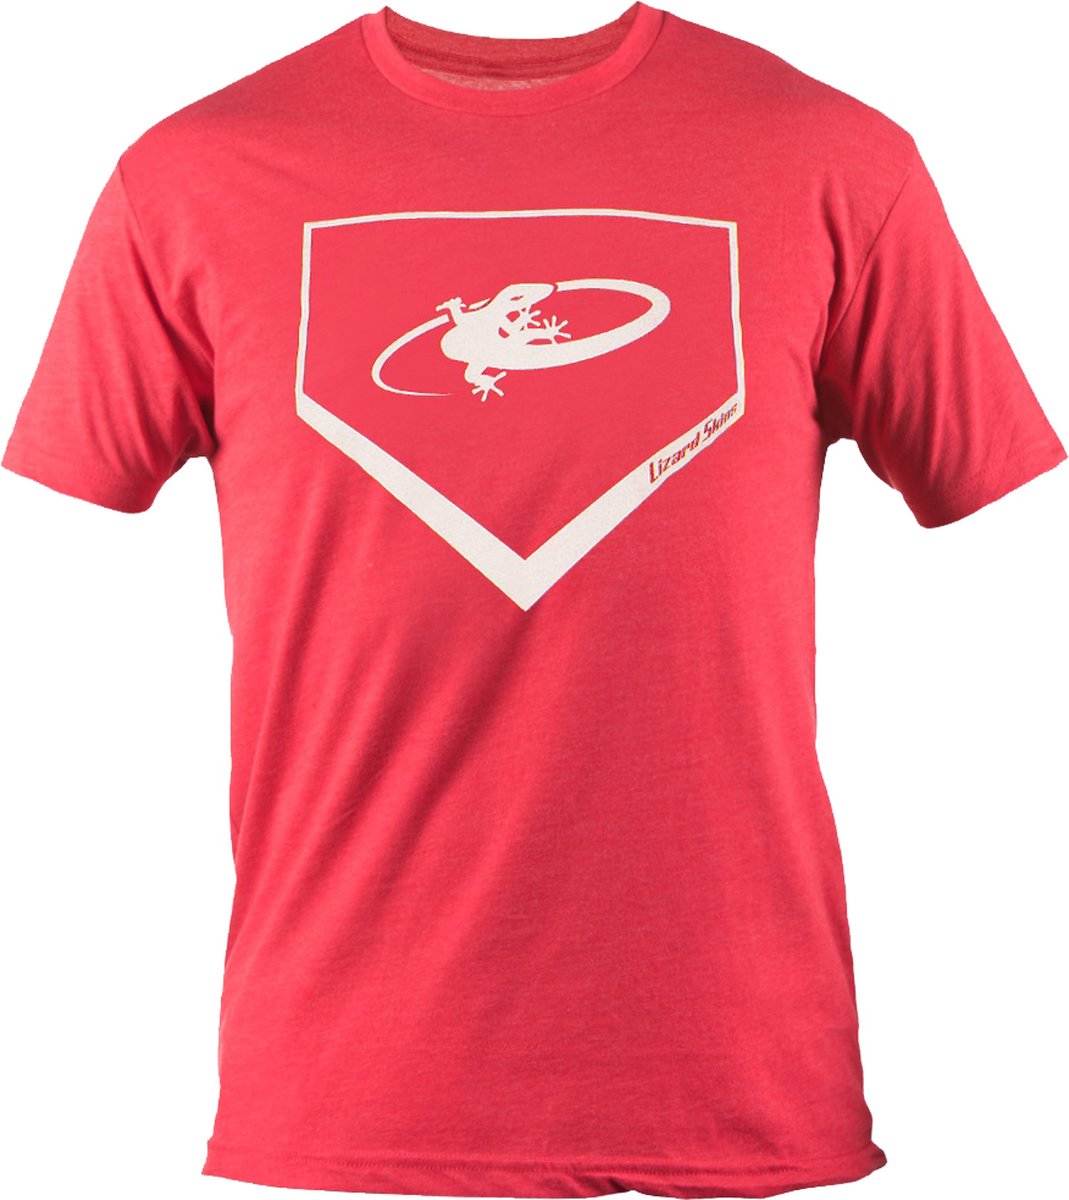 Lizard Home Plate, Next Level T-Shirt S Red